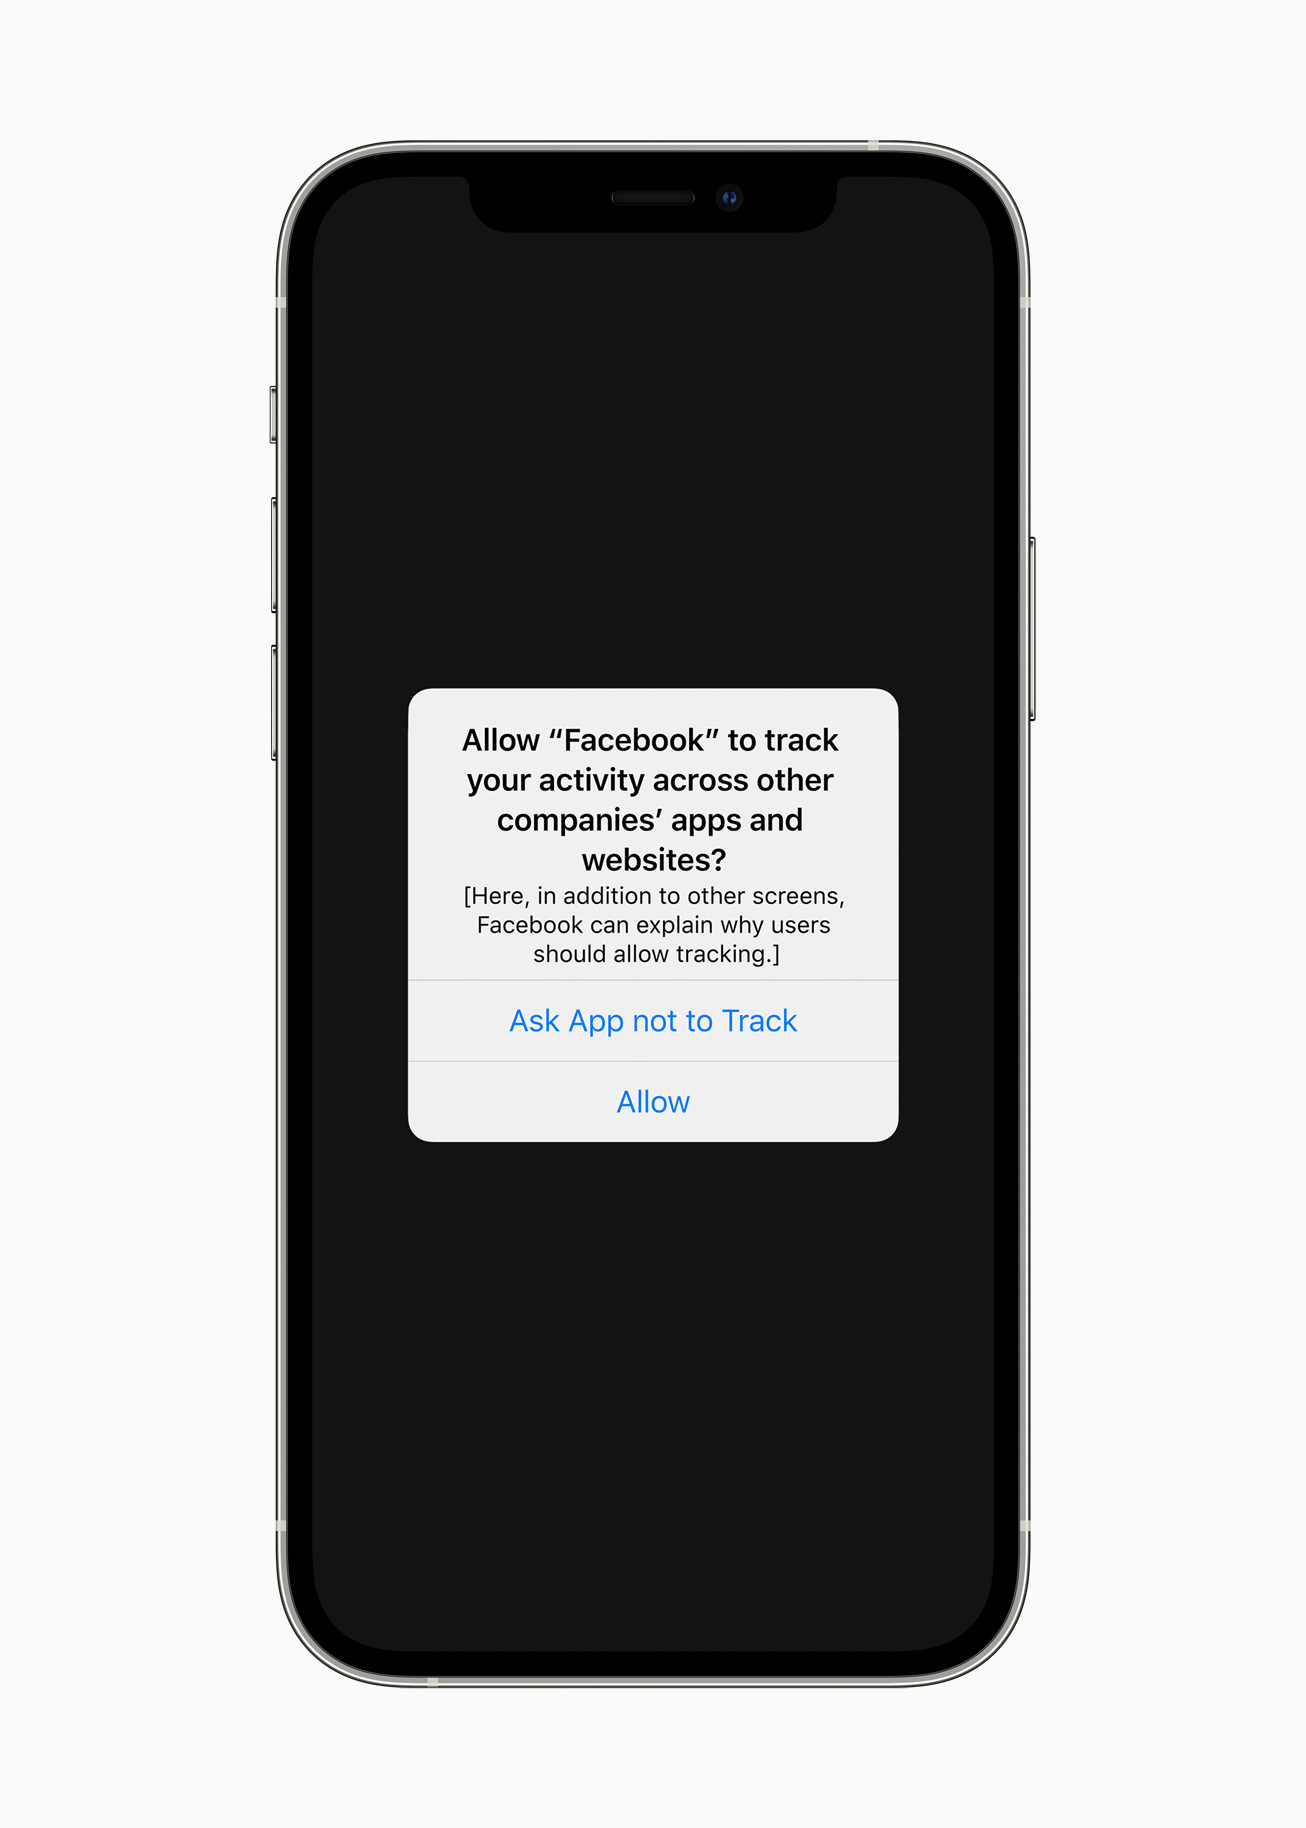 Apples Tracking-Transparenz kommt mit iOS 14.5 | heise online